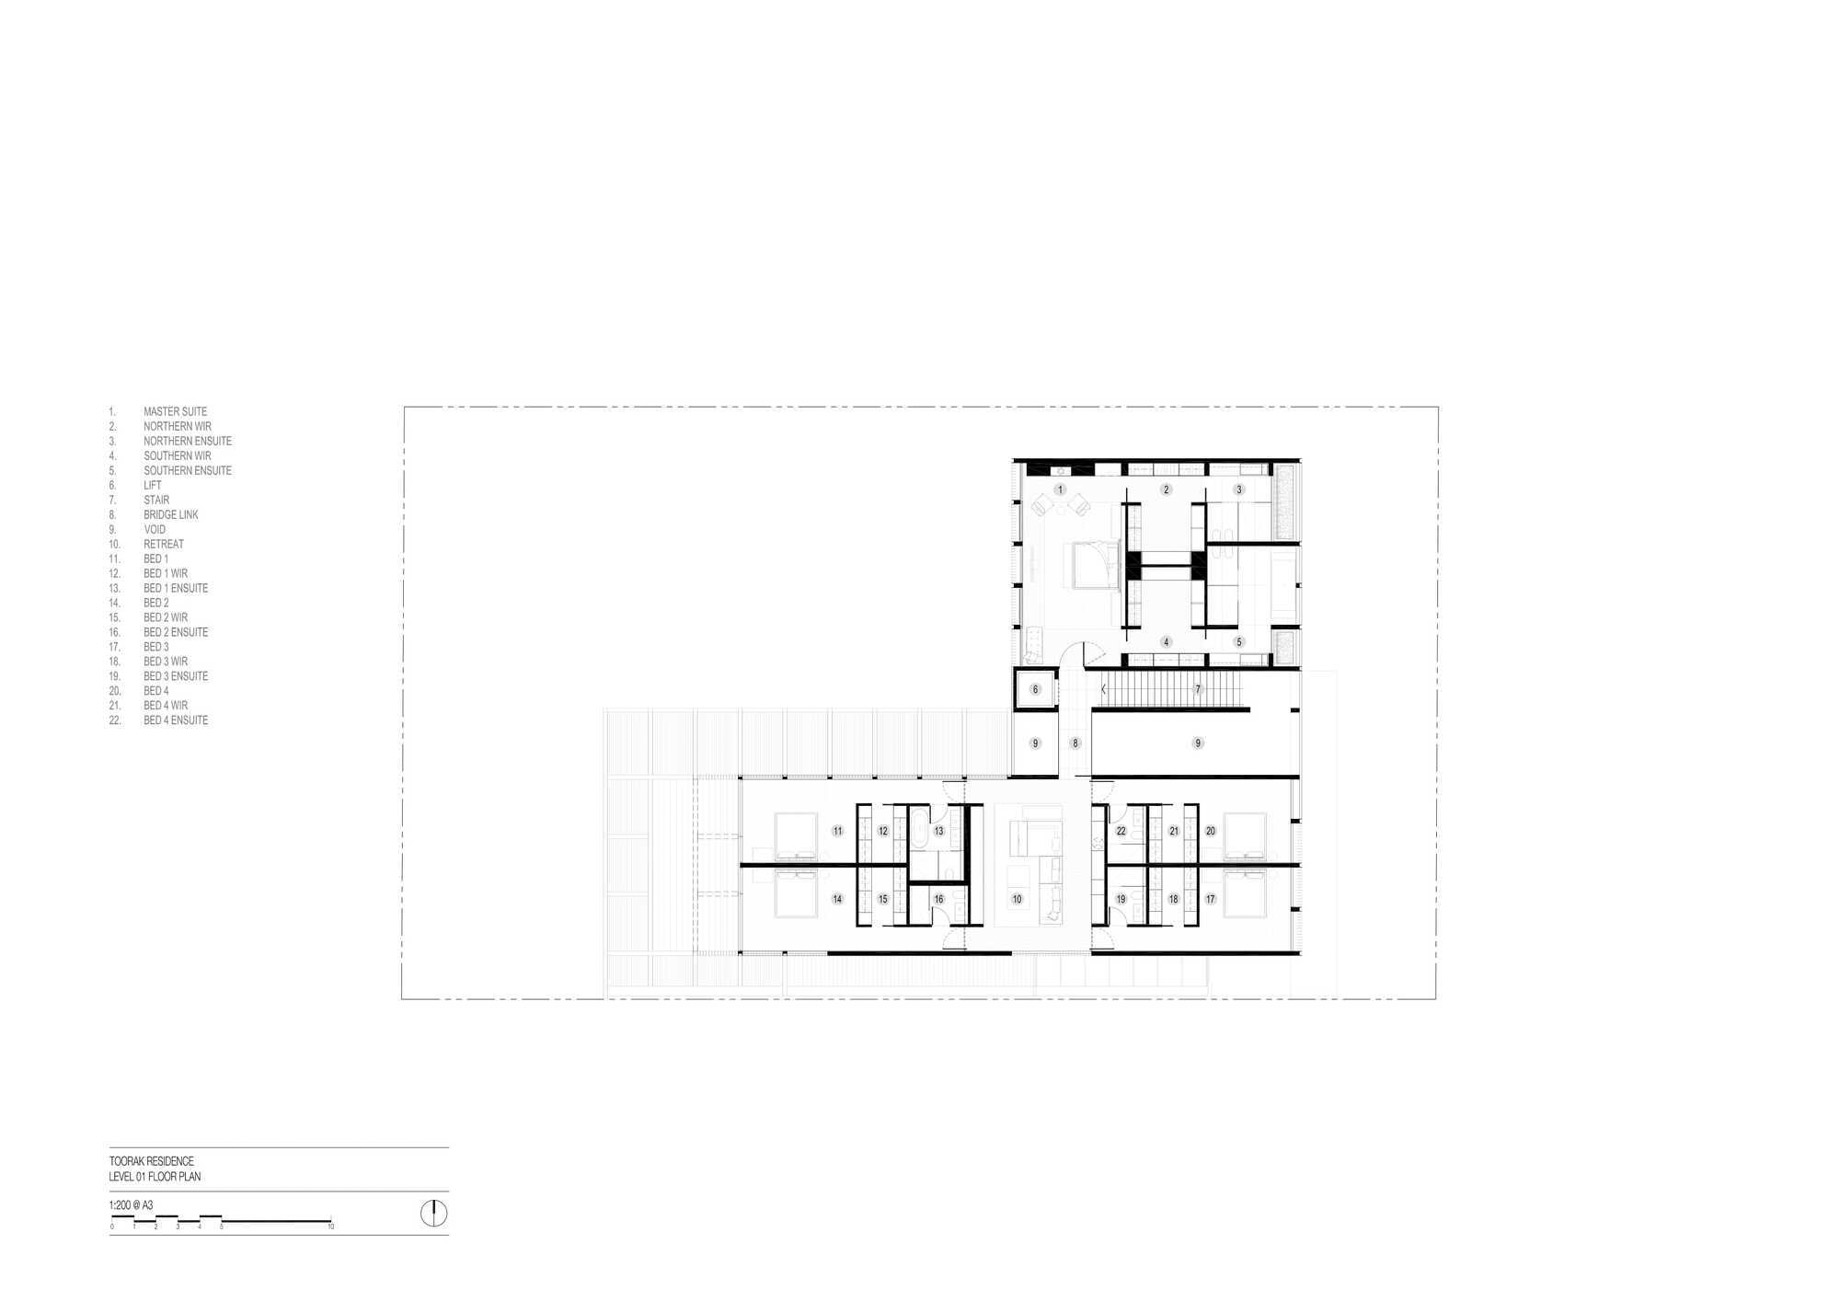 Ottawa Road Modern Residence – Toorak, Melbourne, Australia – Floor Plans